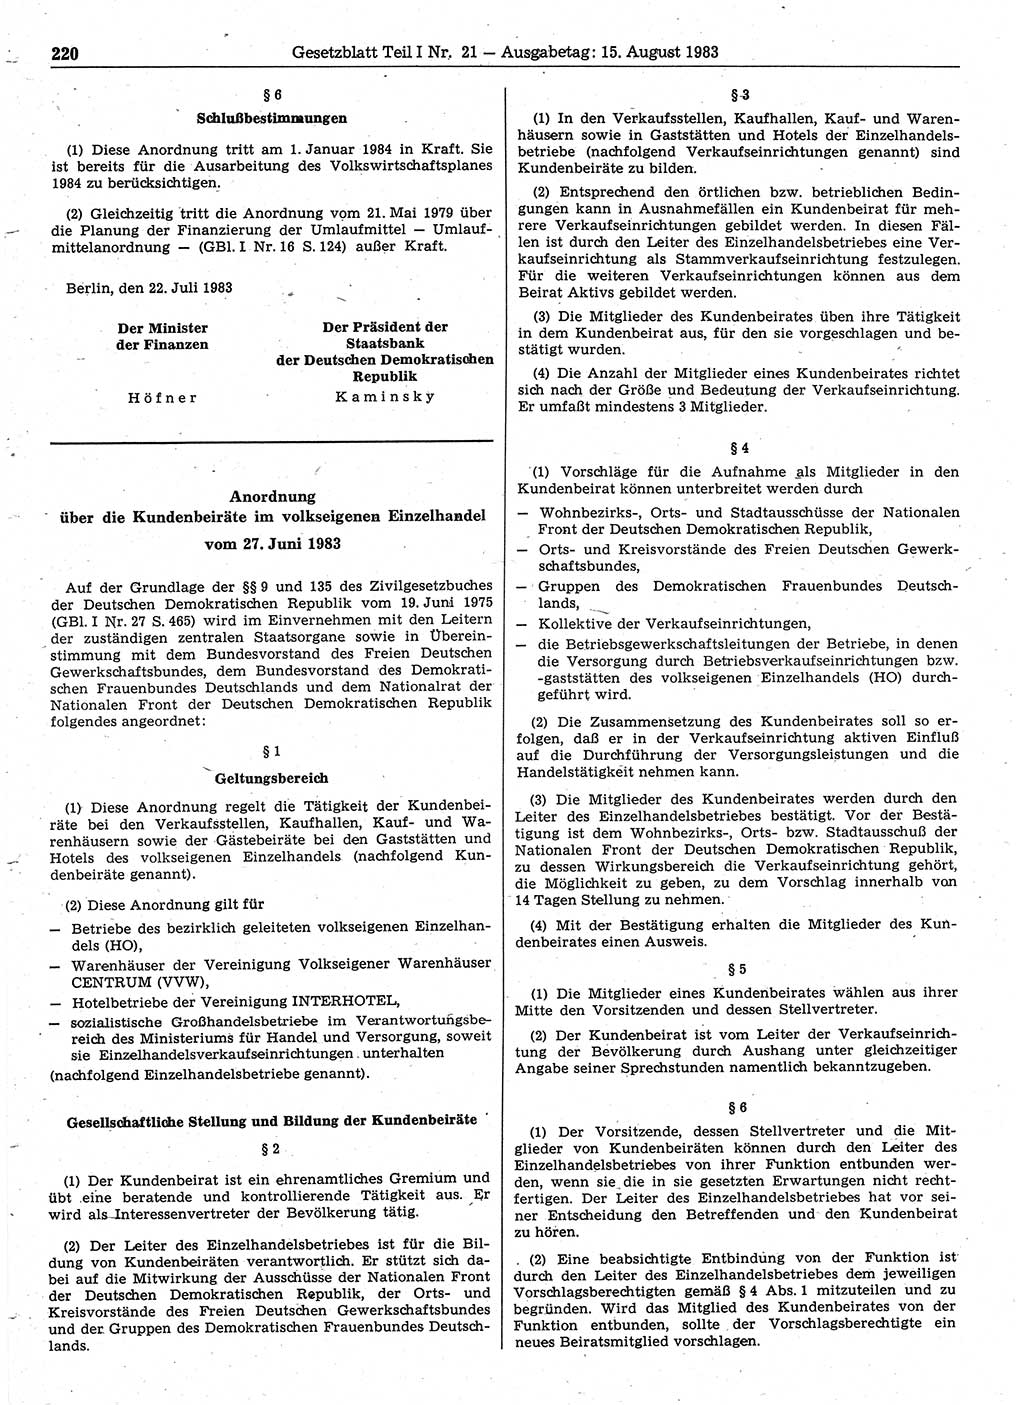 Gesetzblatt (GBl.) der Deutschen Demokratischen Republik (DDR) Teil Ⅰ 1983, Seite 220 (GBl. DDR Ⅰ 1983, S. 220)